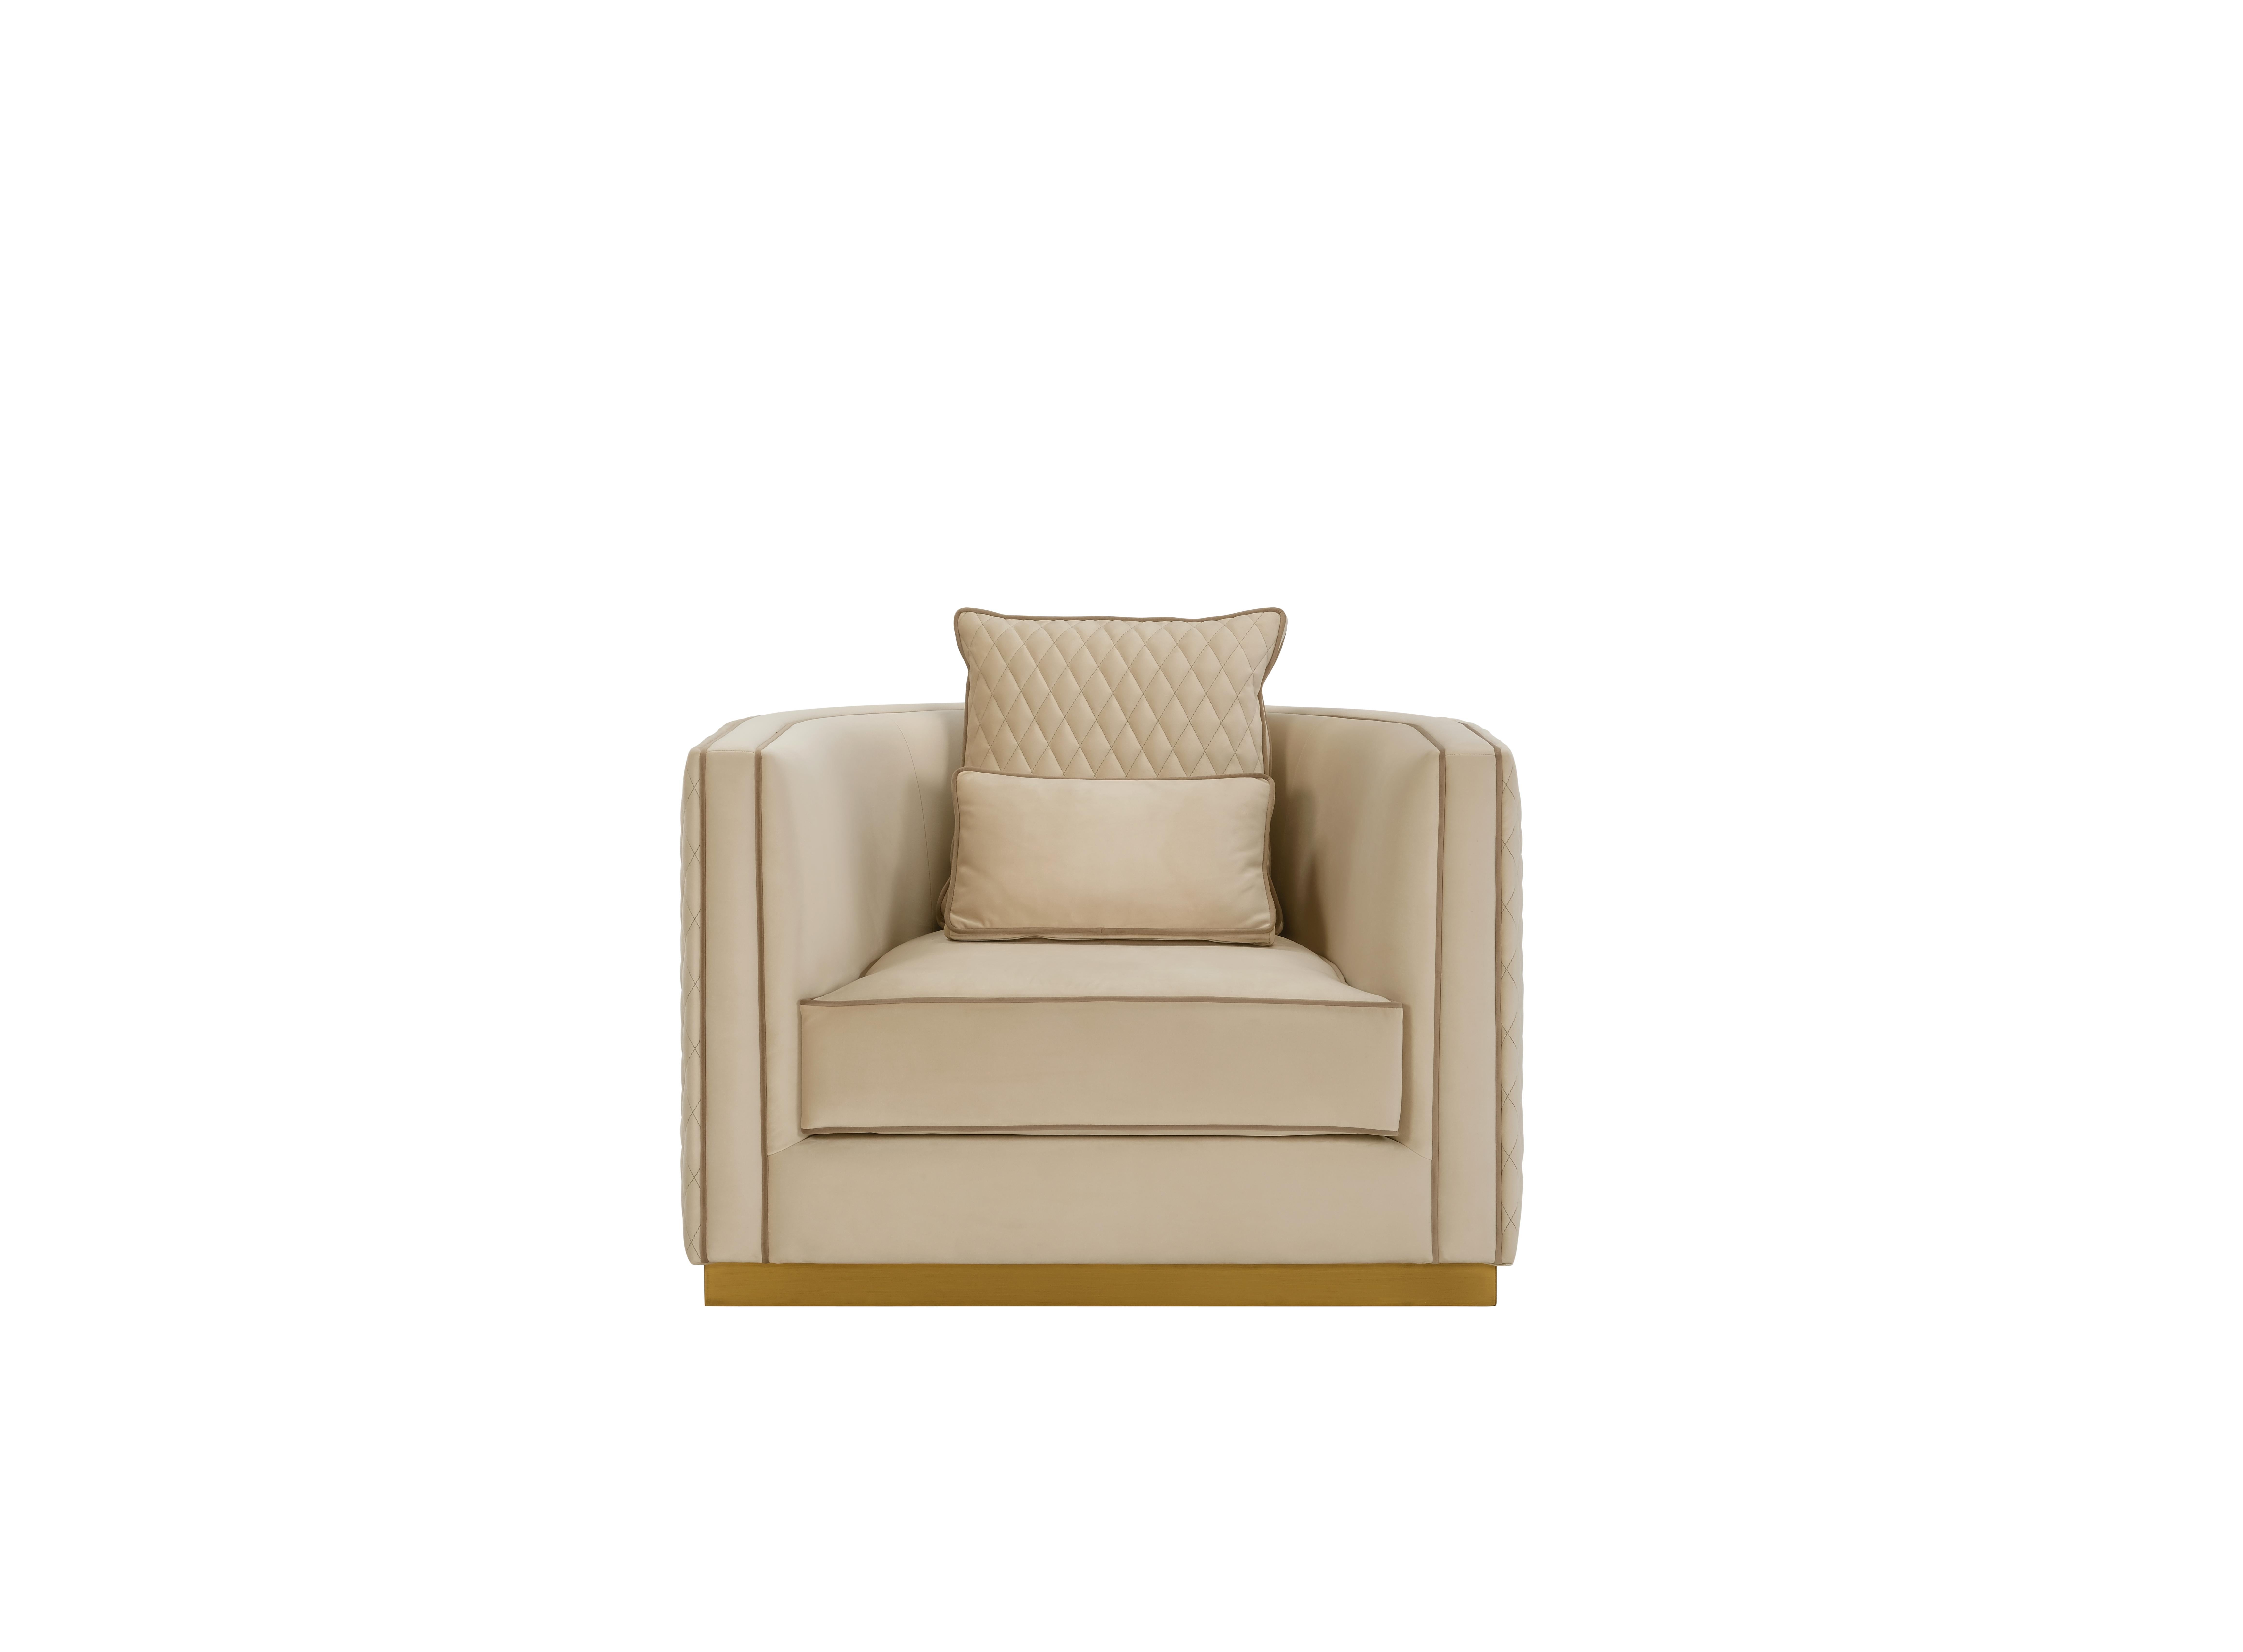 GRANT est un fauteuil distingué, avec un dossier enveloppant et un design extrêmement raffiné, complété par des coussins composés de plumes pour une sensation de confort supérieure. Grant permet de combiner différentes textures sur le dossier et les